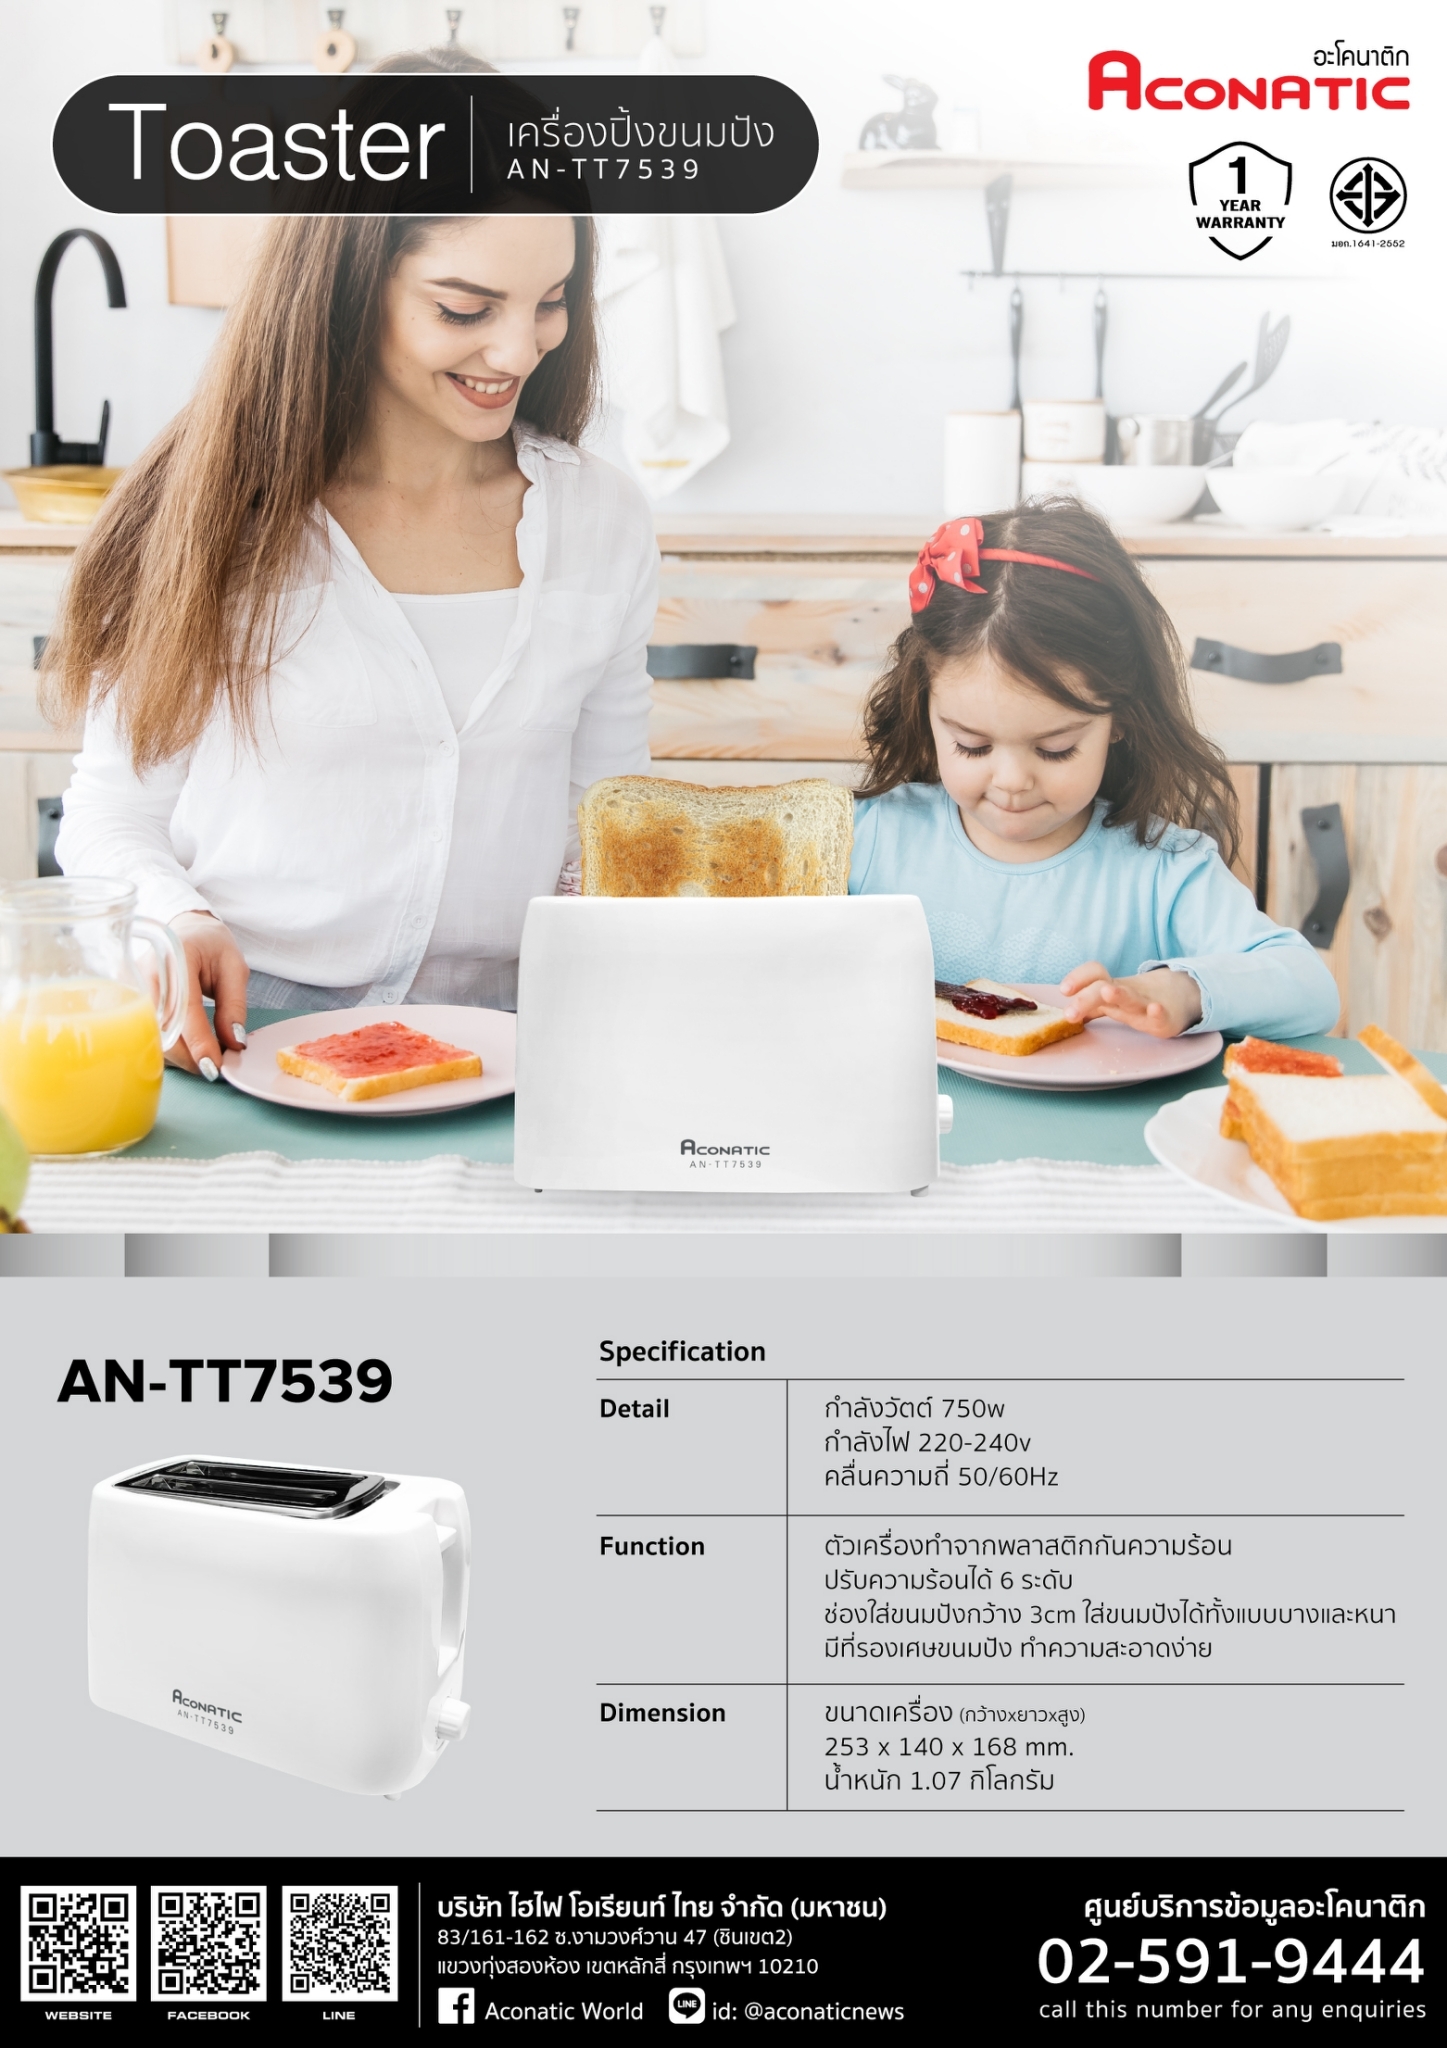 Toaster model AN-TT7539